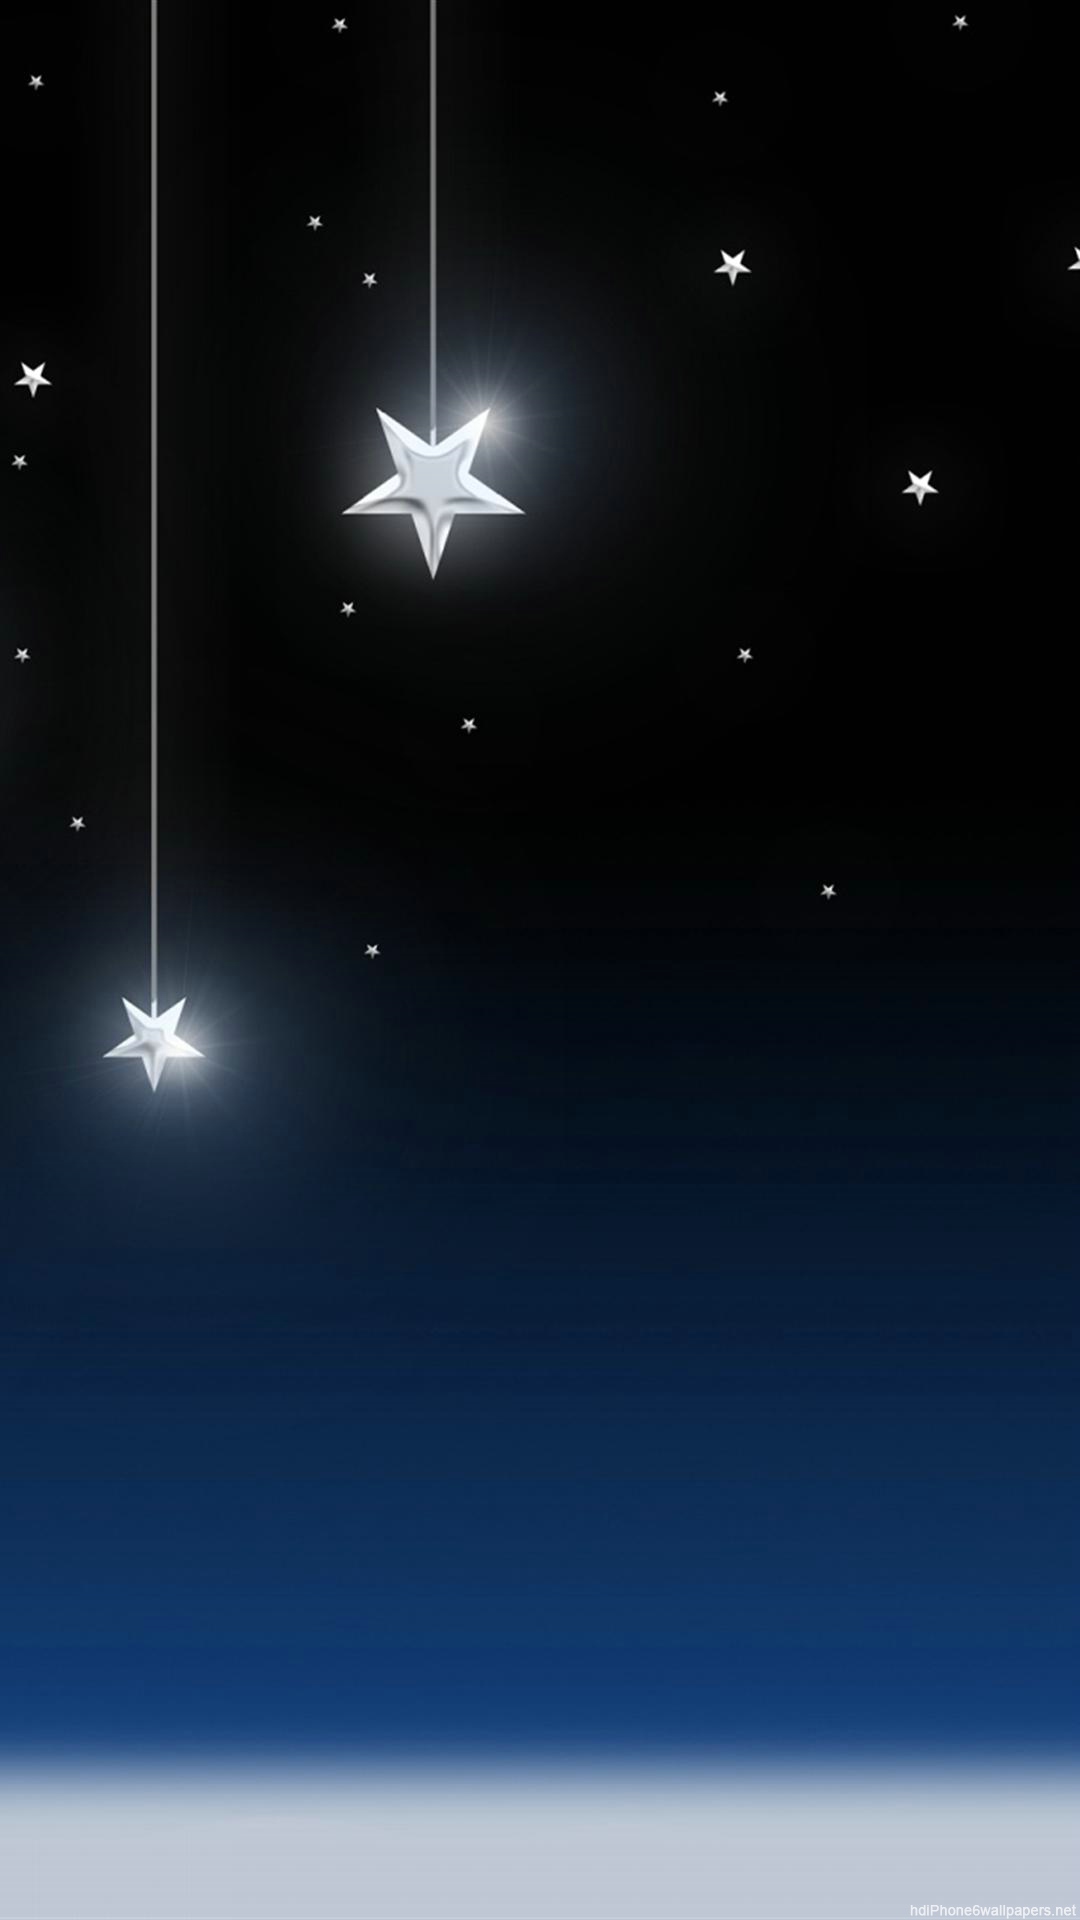 星のライブ壁紙,空,雰囲気,天体,光,星